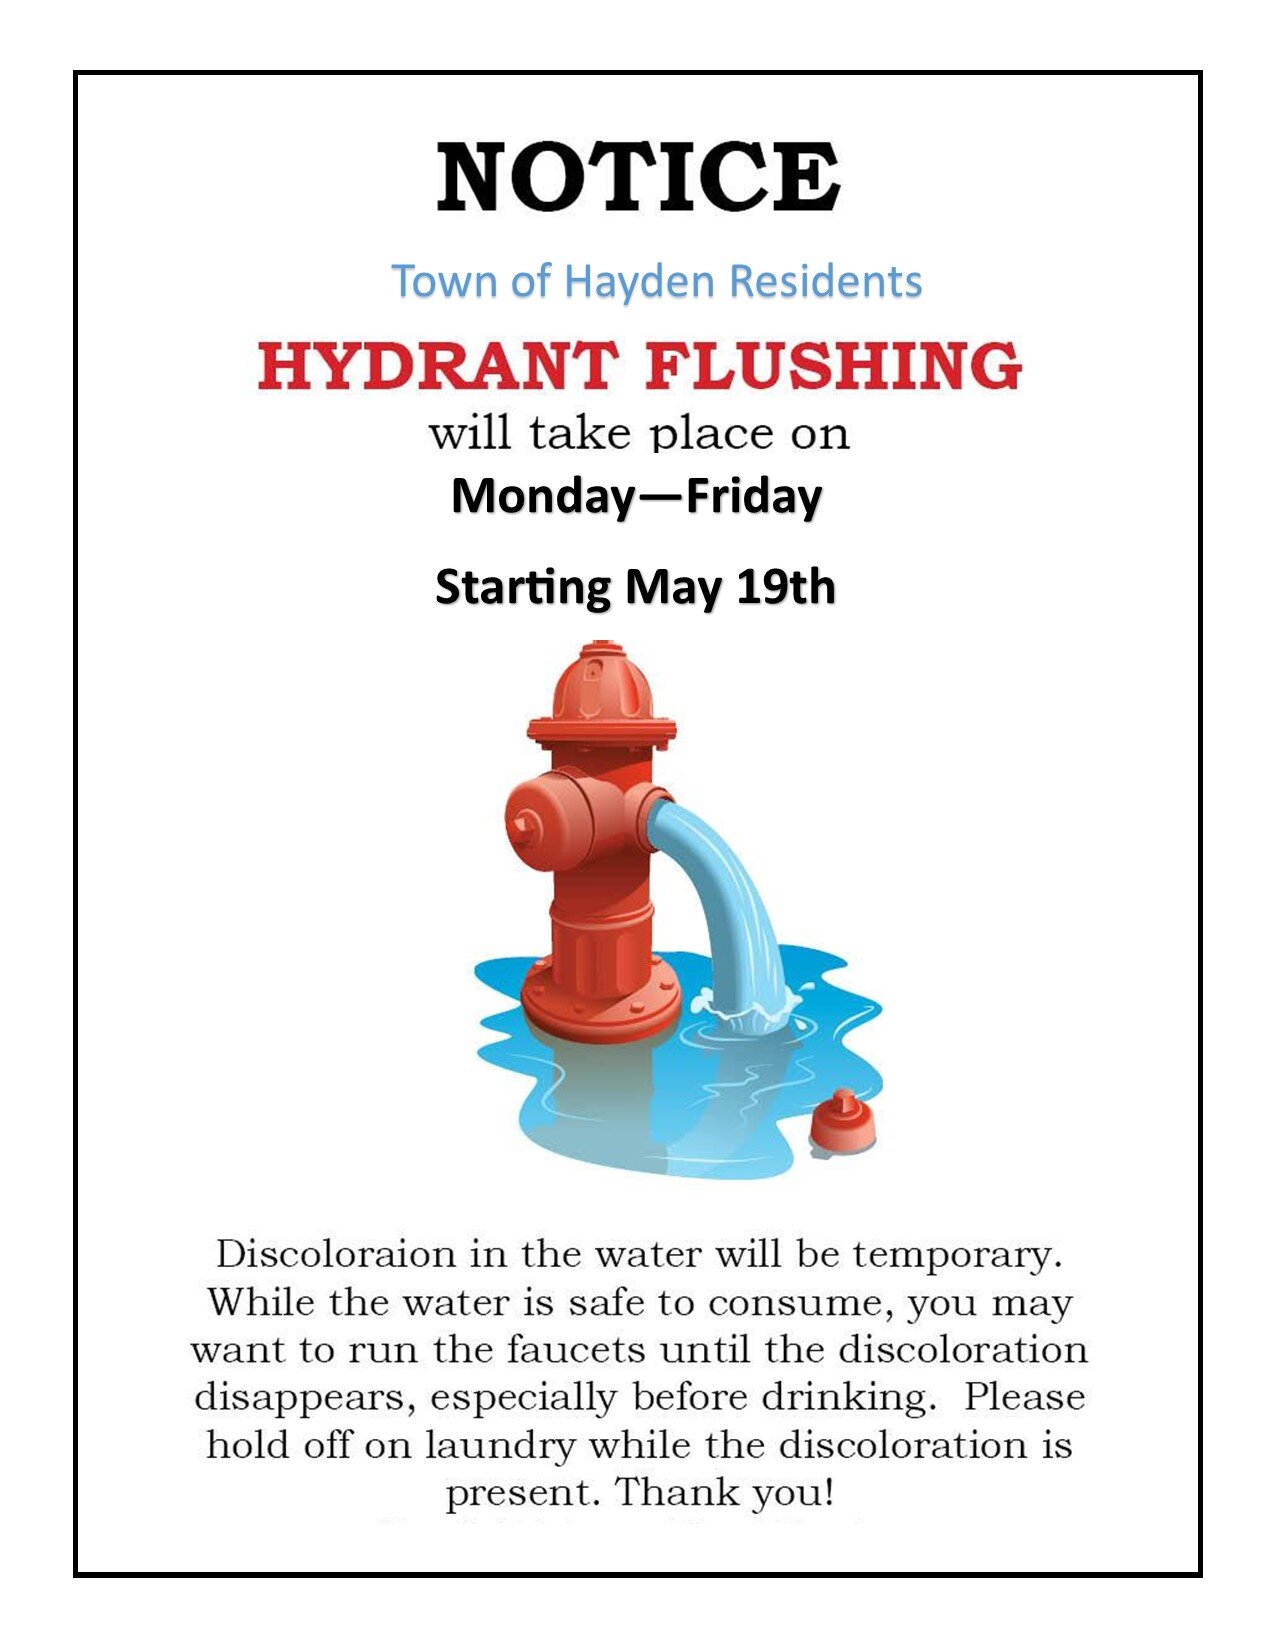 Hydrant flushing flyer.